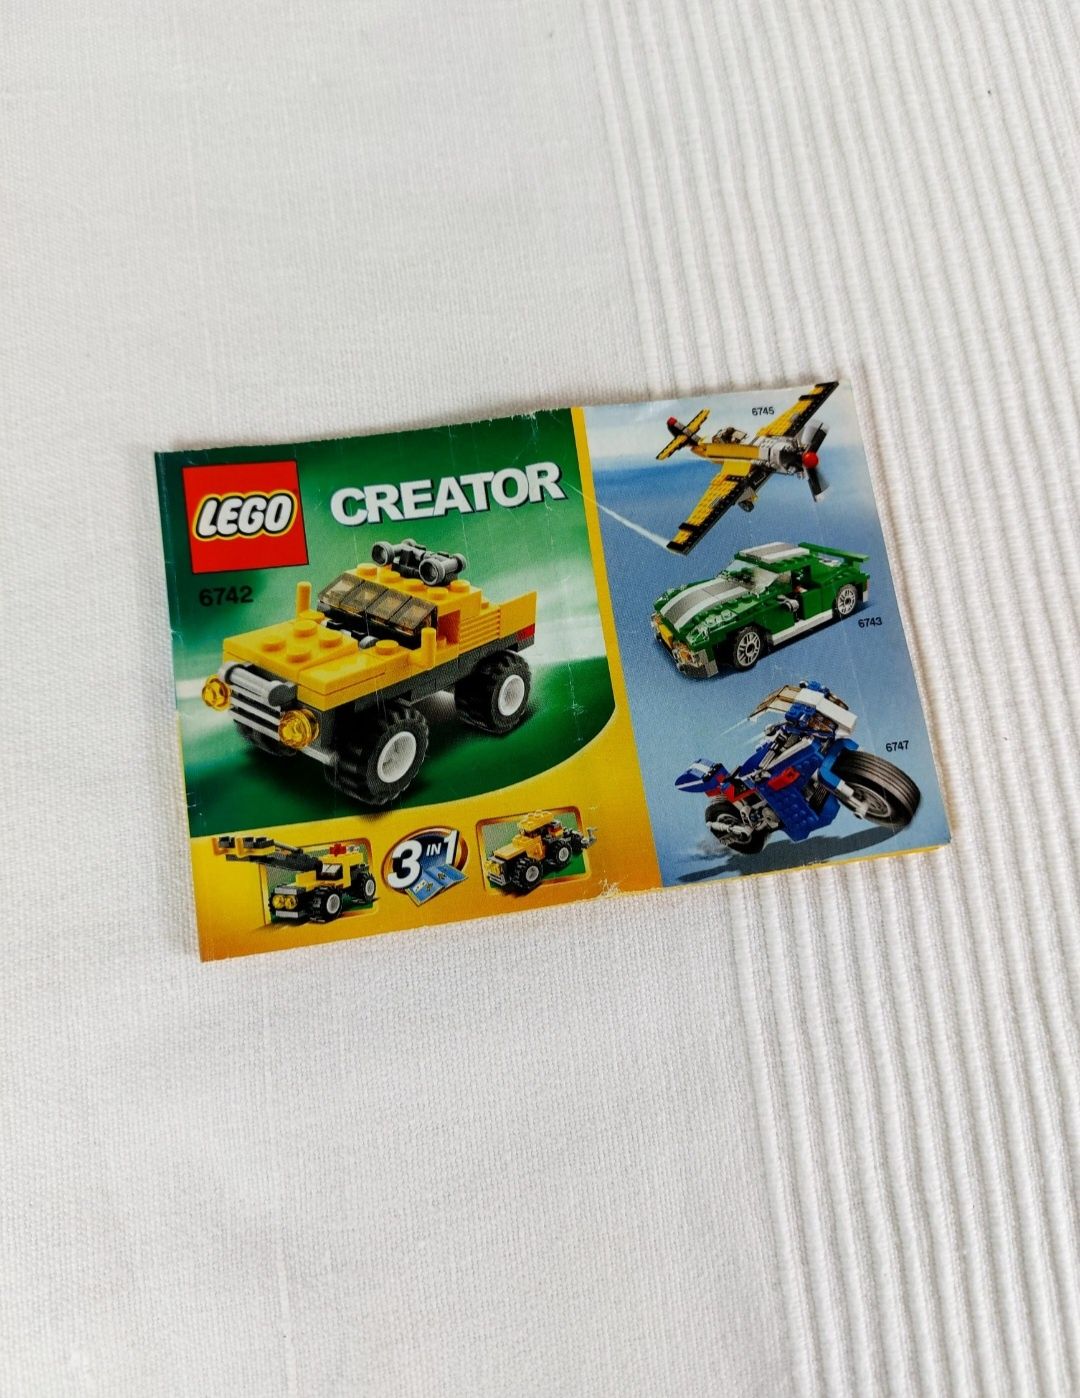 Unikatowy Set Zestaw Klocków Lego 6741 Creator Mały Samochód Terenowy